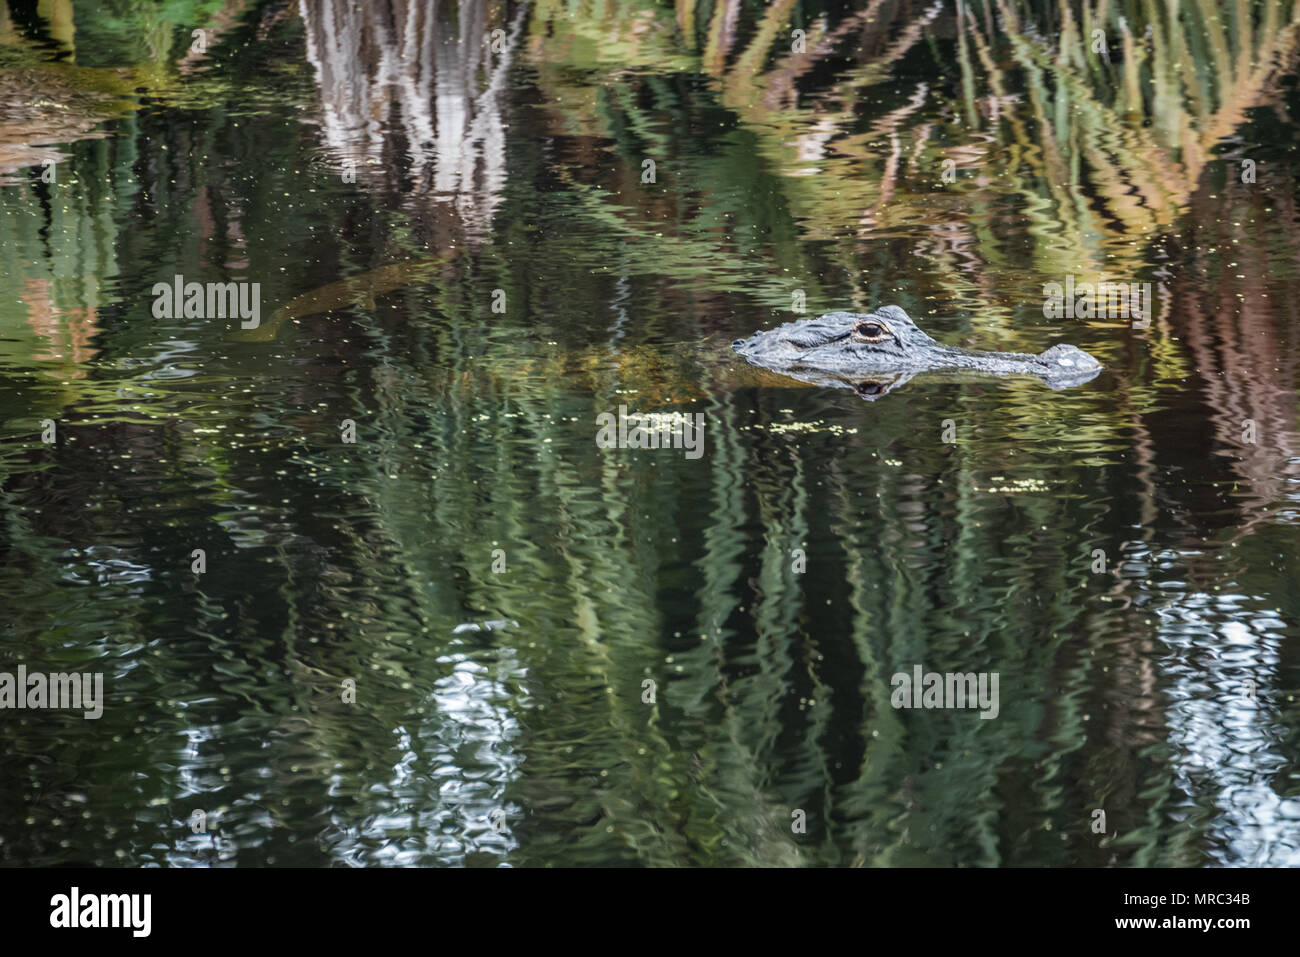 Florida Krokodil schwebt bewegungslos im Wasser der Guana Fluss, während ein gar Fisch schwimmt knapp unter der Oberfläche. Stockfoto